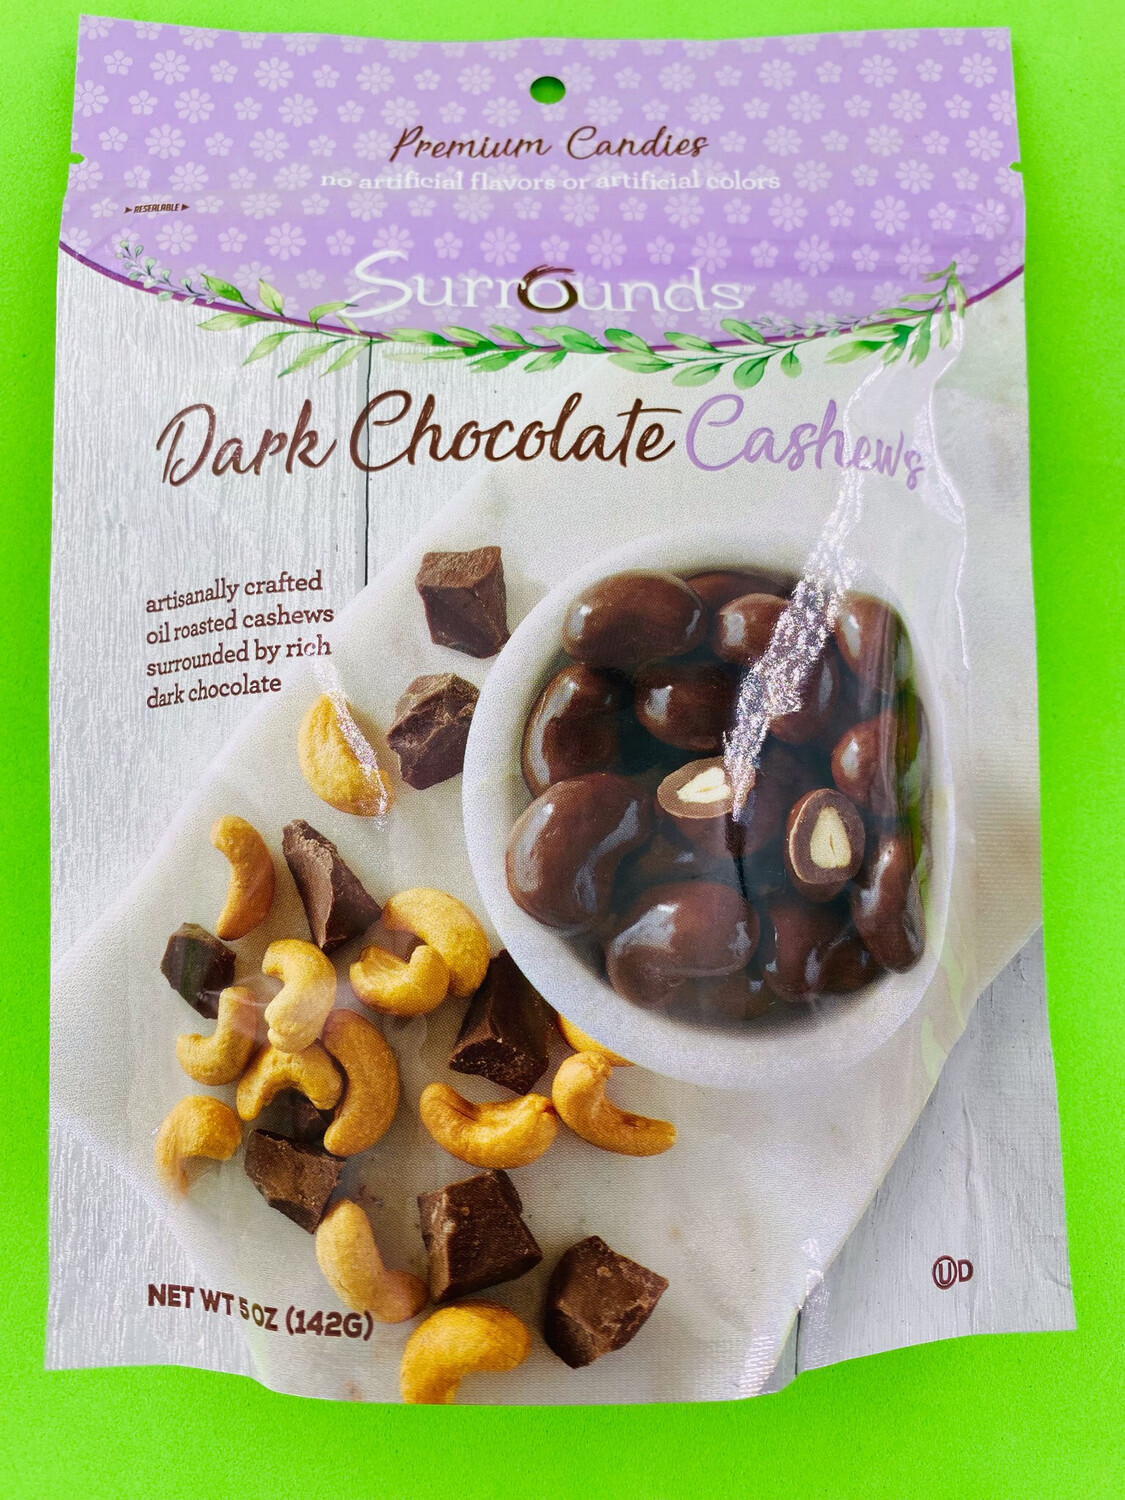 Surrounds Dark Chocolate Cashews